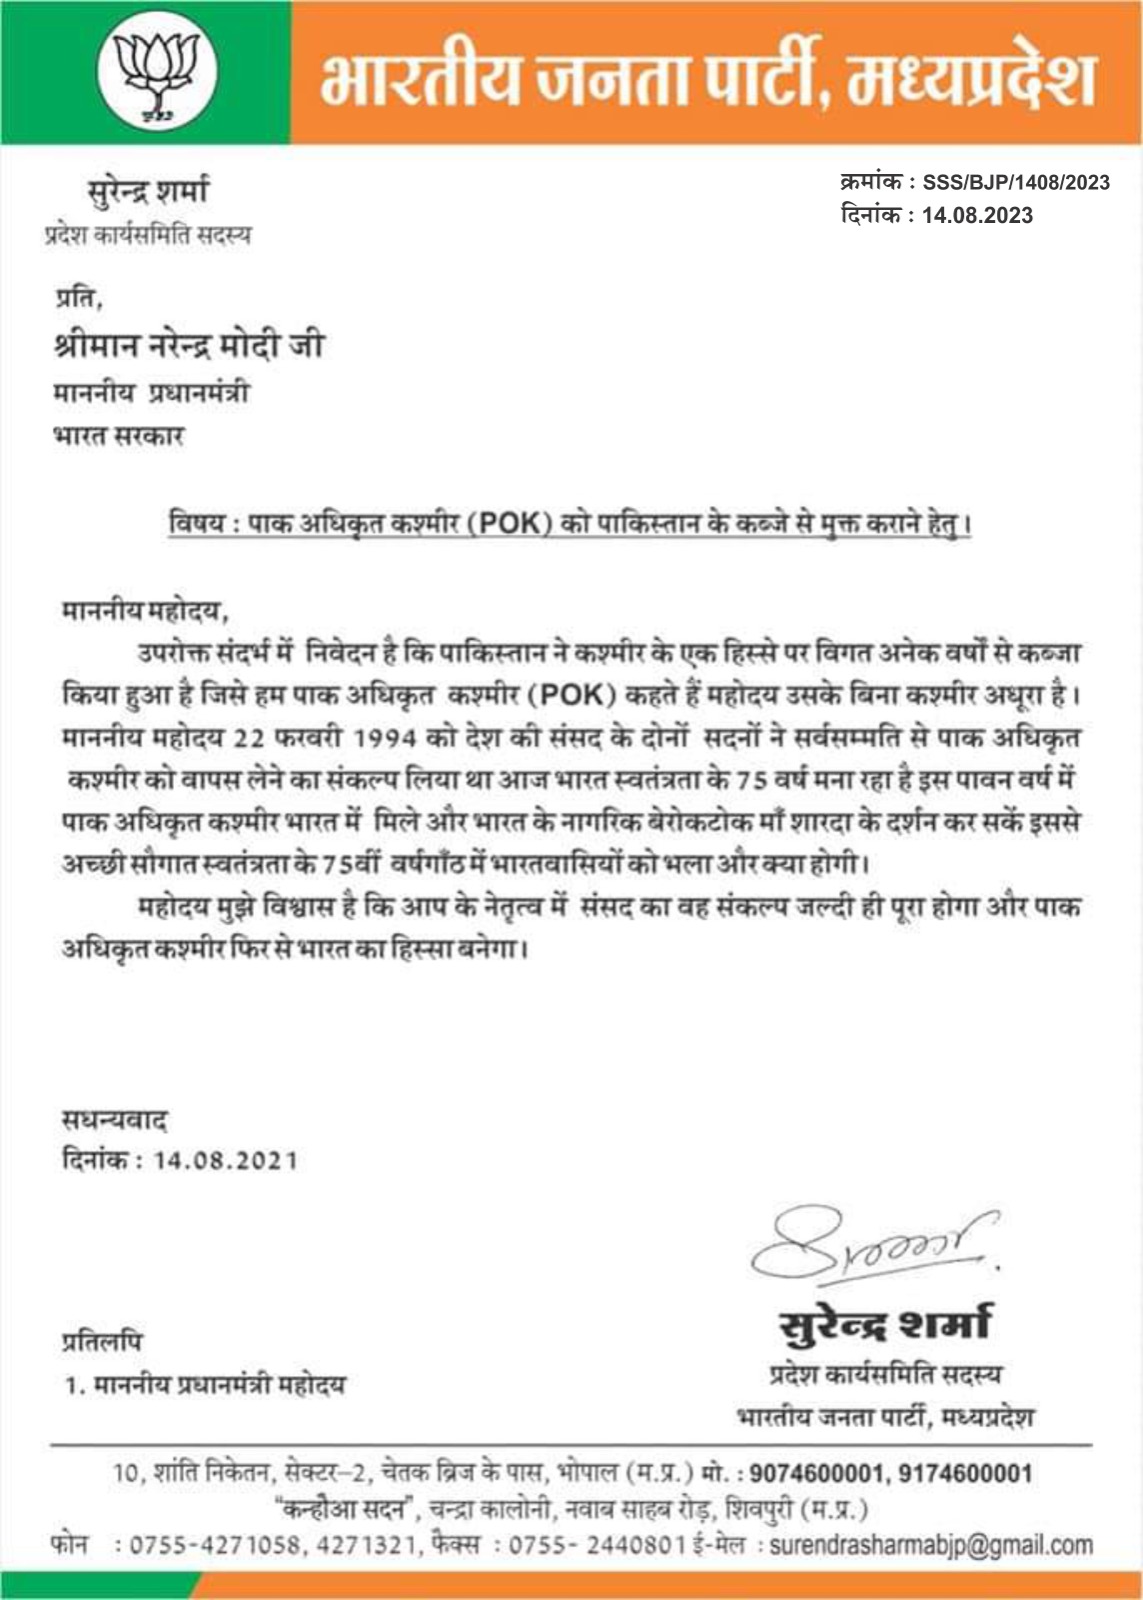 बीजेपी नेता सुरेंद्र शर्मा ने पीएम मोदी को लिखा पत्र, पाक अधिकृत कश्मीर को मुक्त कराने की मांग